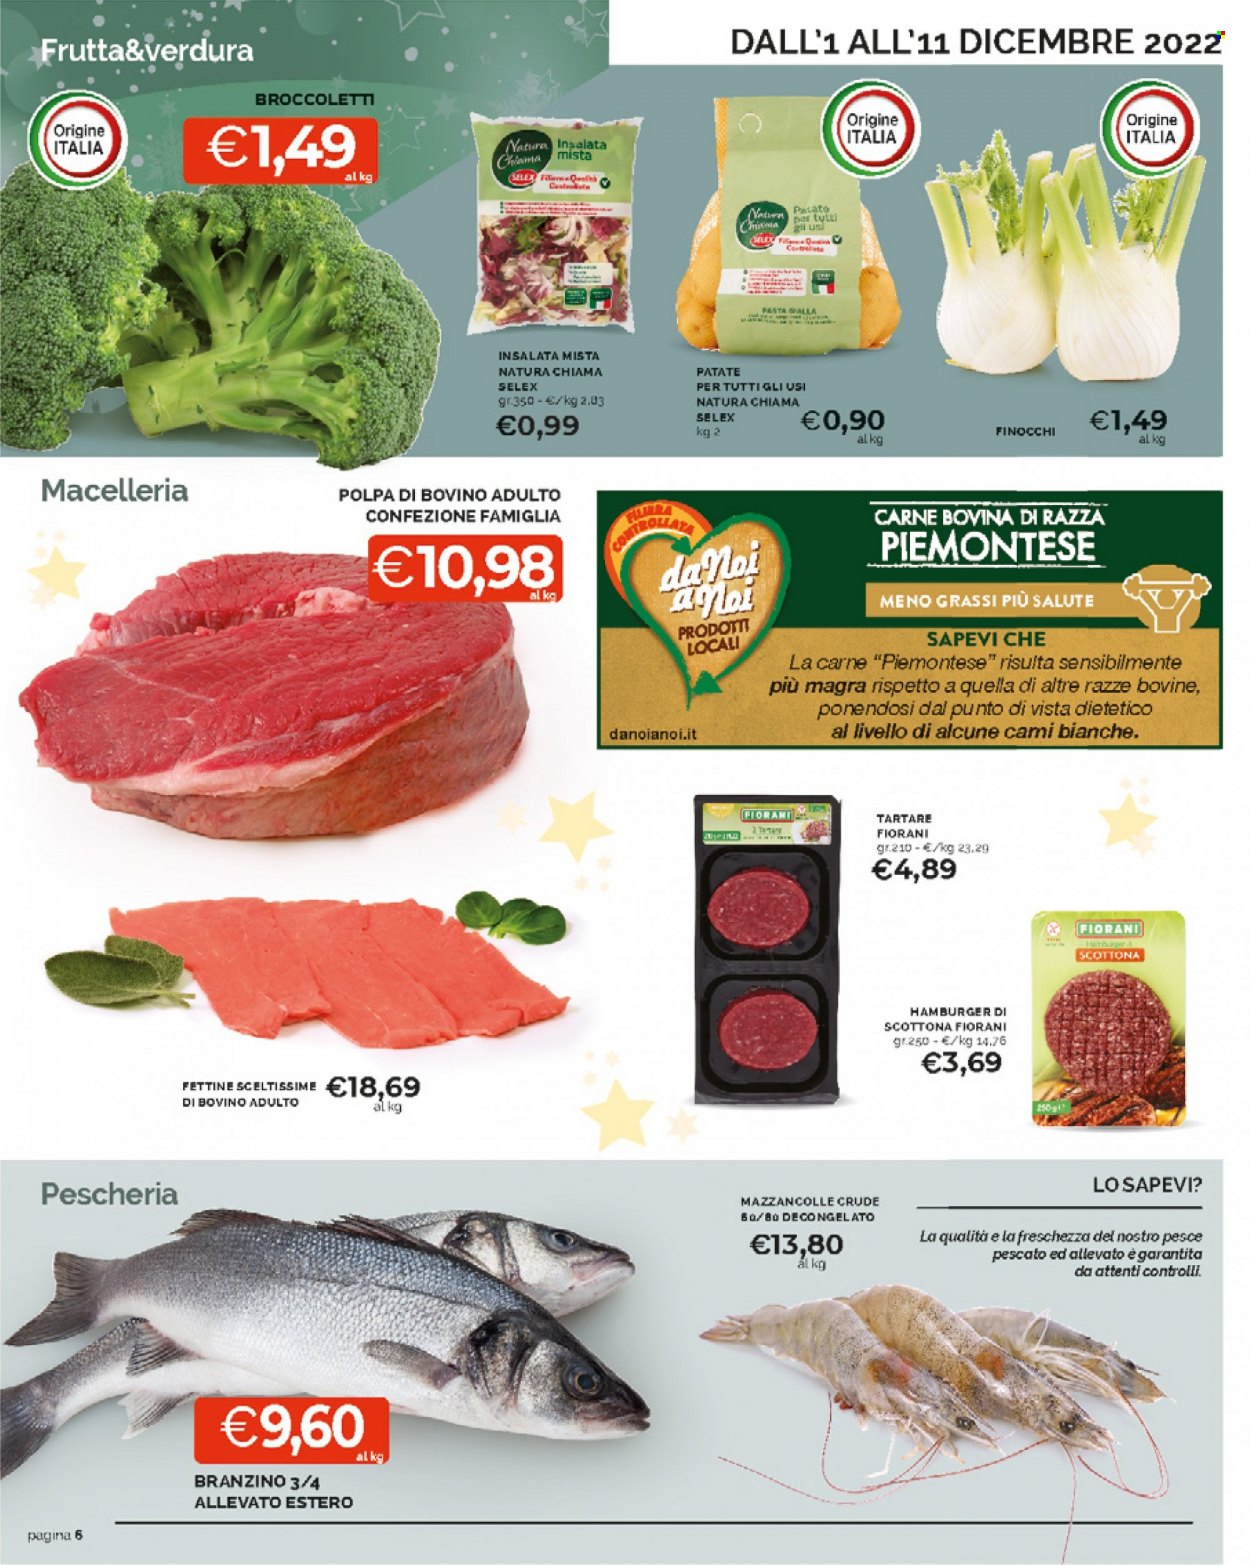 thumbnail - Volantino Mercatò - 1/12/2022 - 11/12/2022 - Prodotti in offerta - insalata mista, manzo, polpa di manzo, scottona, hamburger, branzino, spigola, pesce, mazzancolle. Pagina 6.